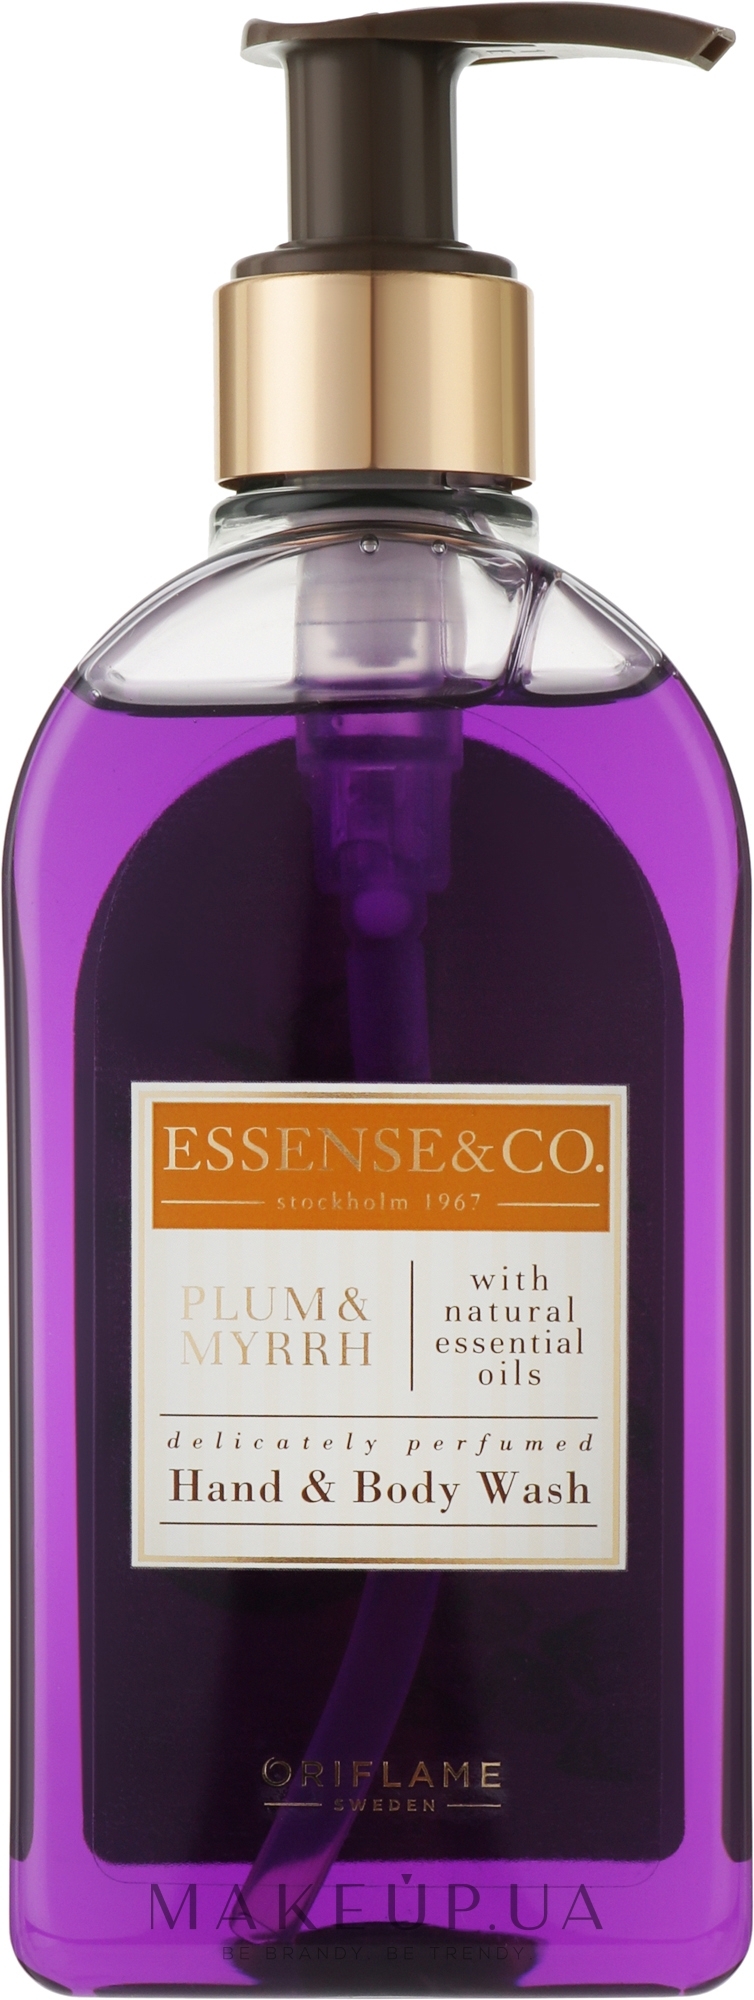 Жидкое мыло для рук и тела со сливой и миррой - Oriflame Essense & Co Hand & Body Wash Plum & Myrrh — фото 300ml